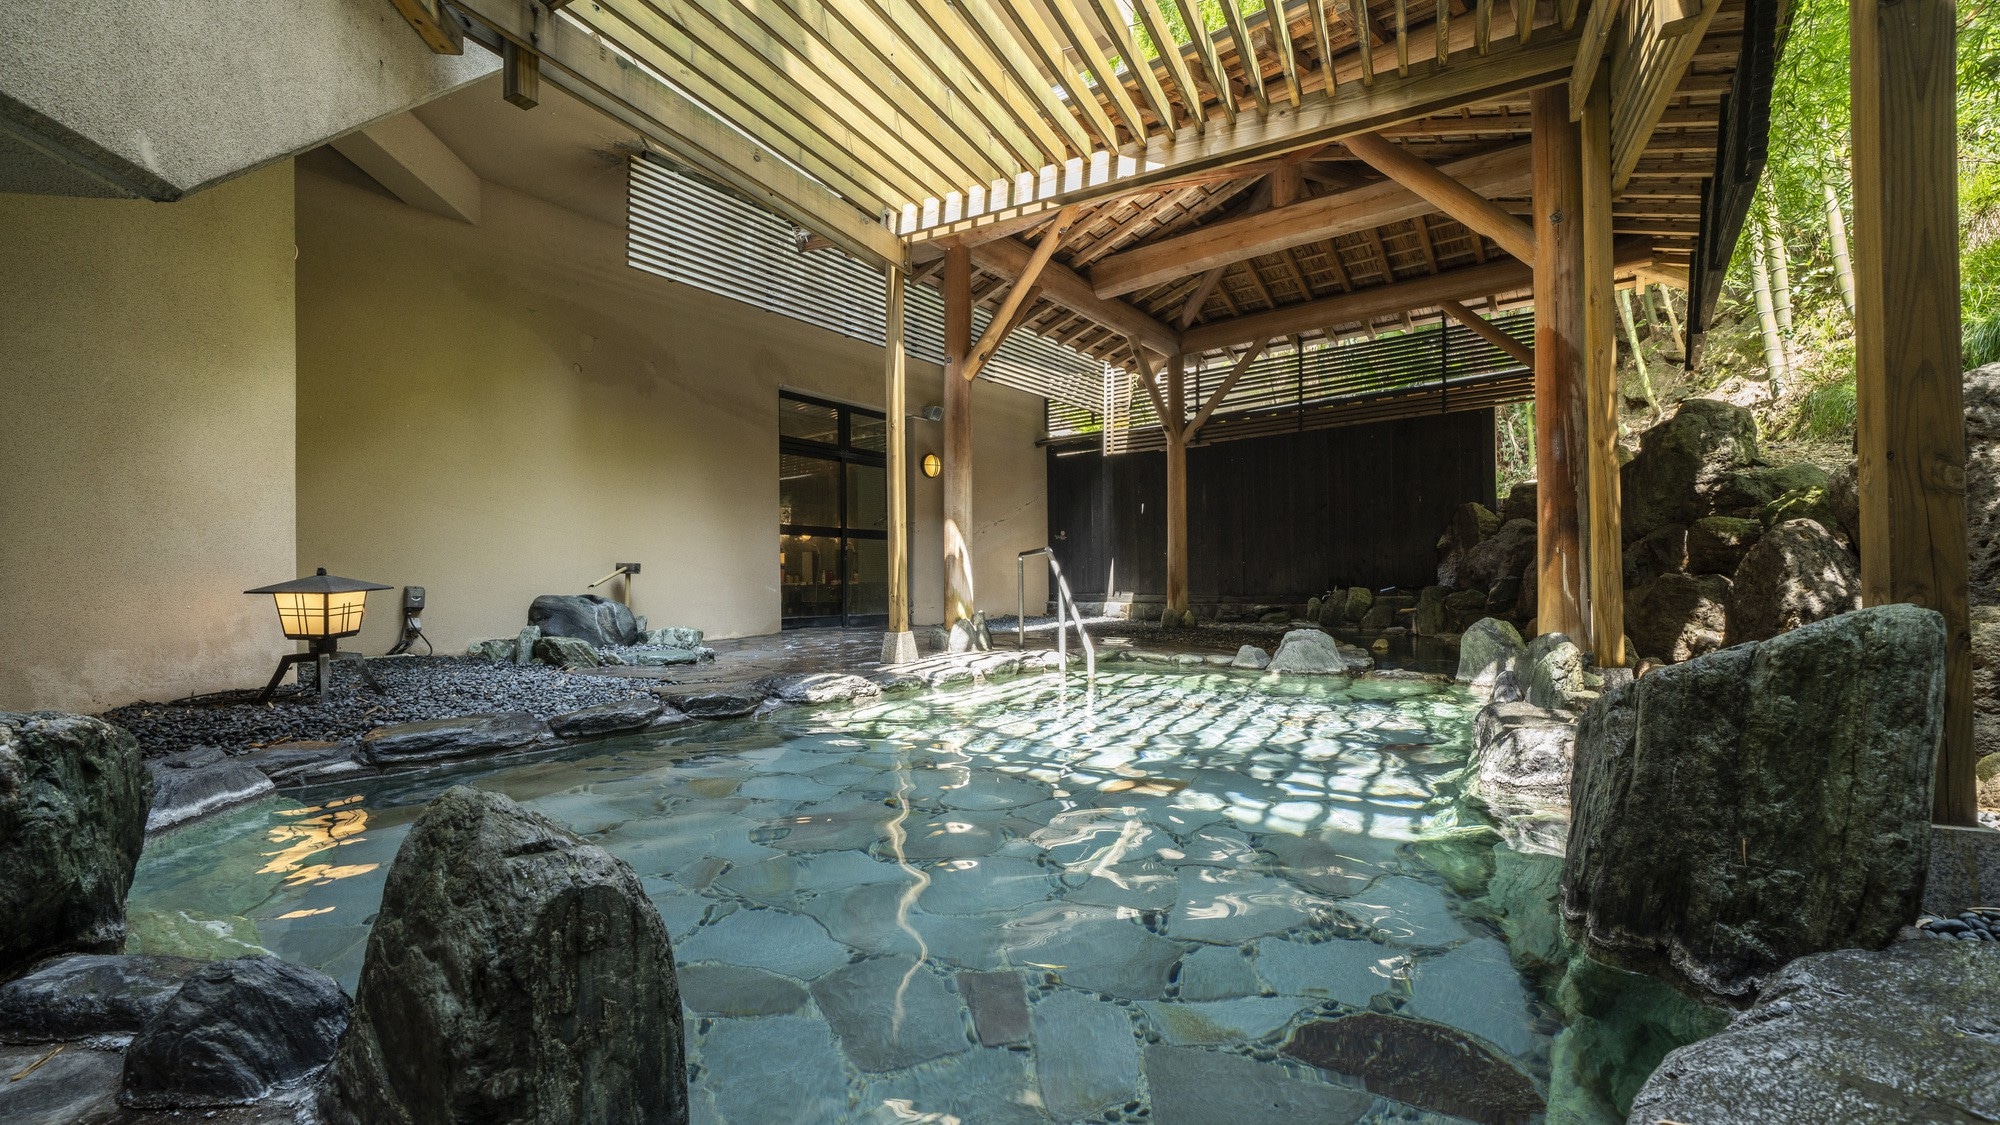 自平安時代以來作為溫泉勝地而繁榮的湯村溫泉是放鬆身心的理想場所。